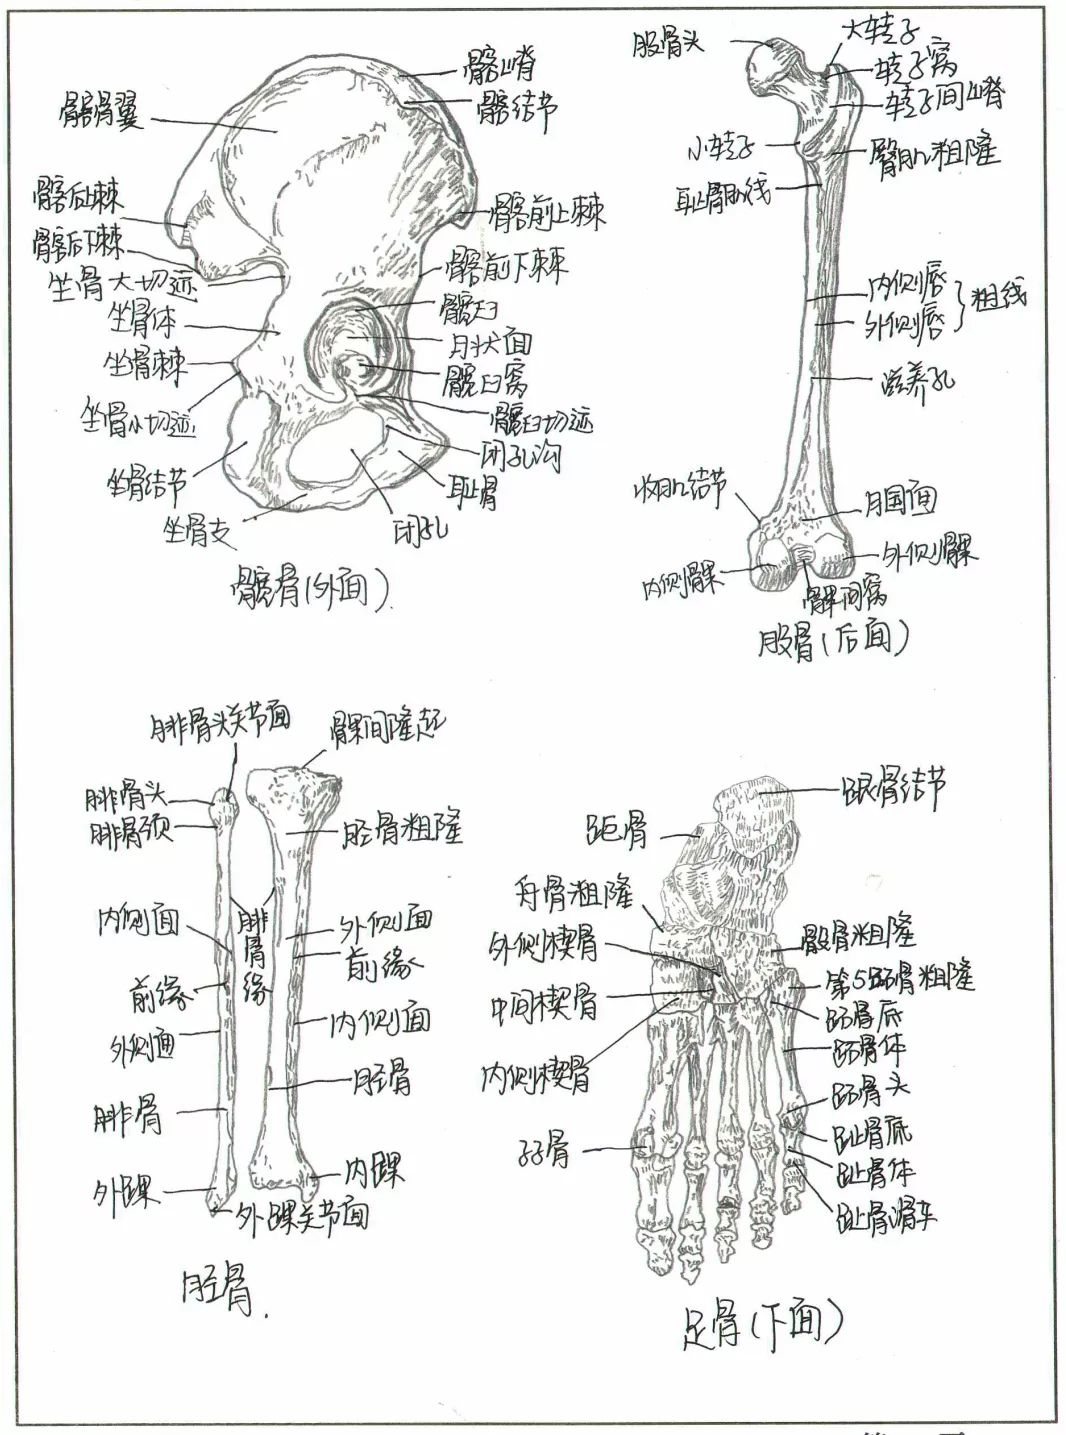 这些网红手绘人体骨骼图竟然出自宝鸡医学生之手